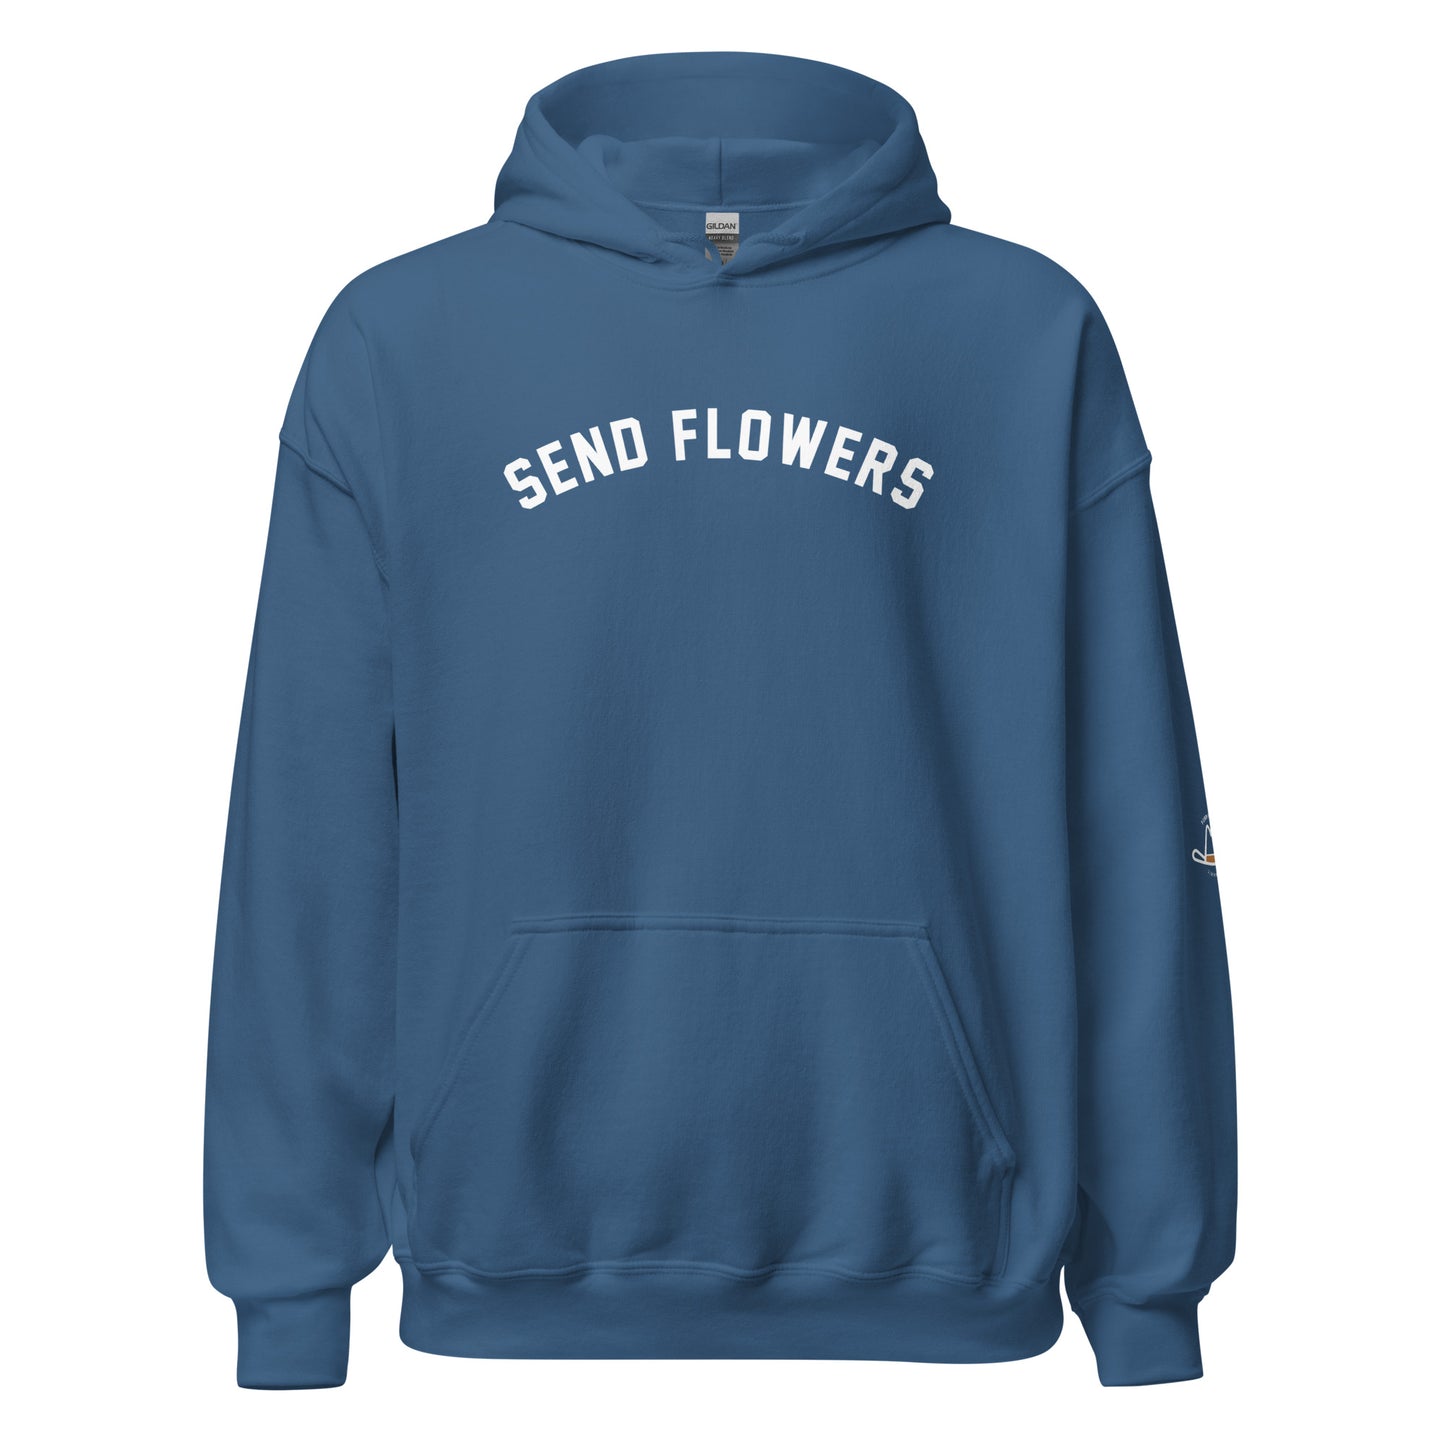 Send Flowers Original Hoodie